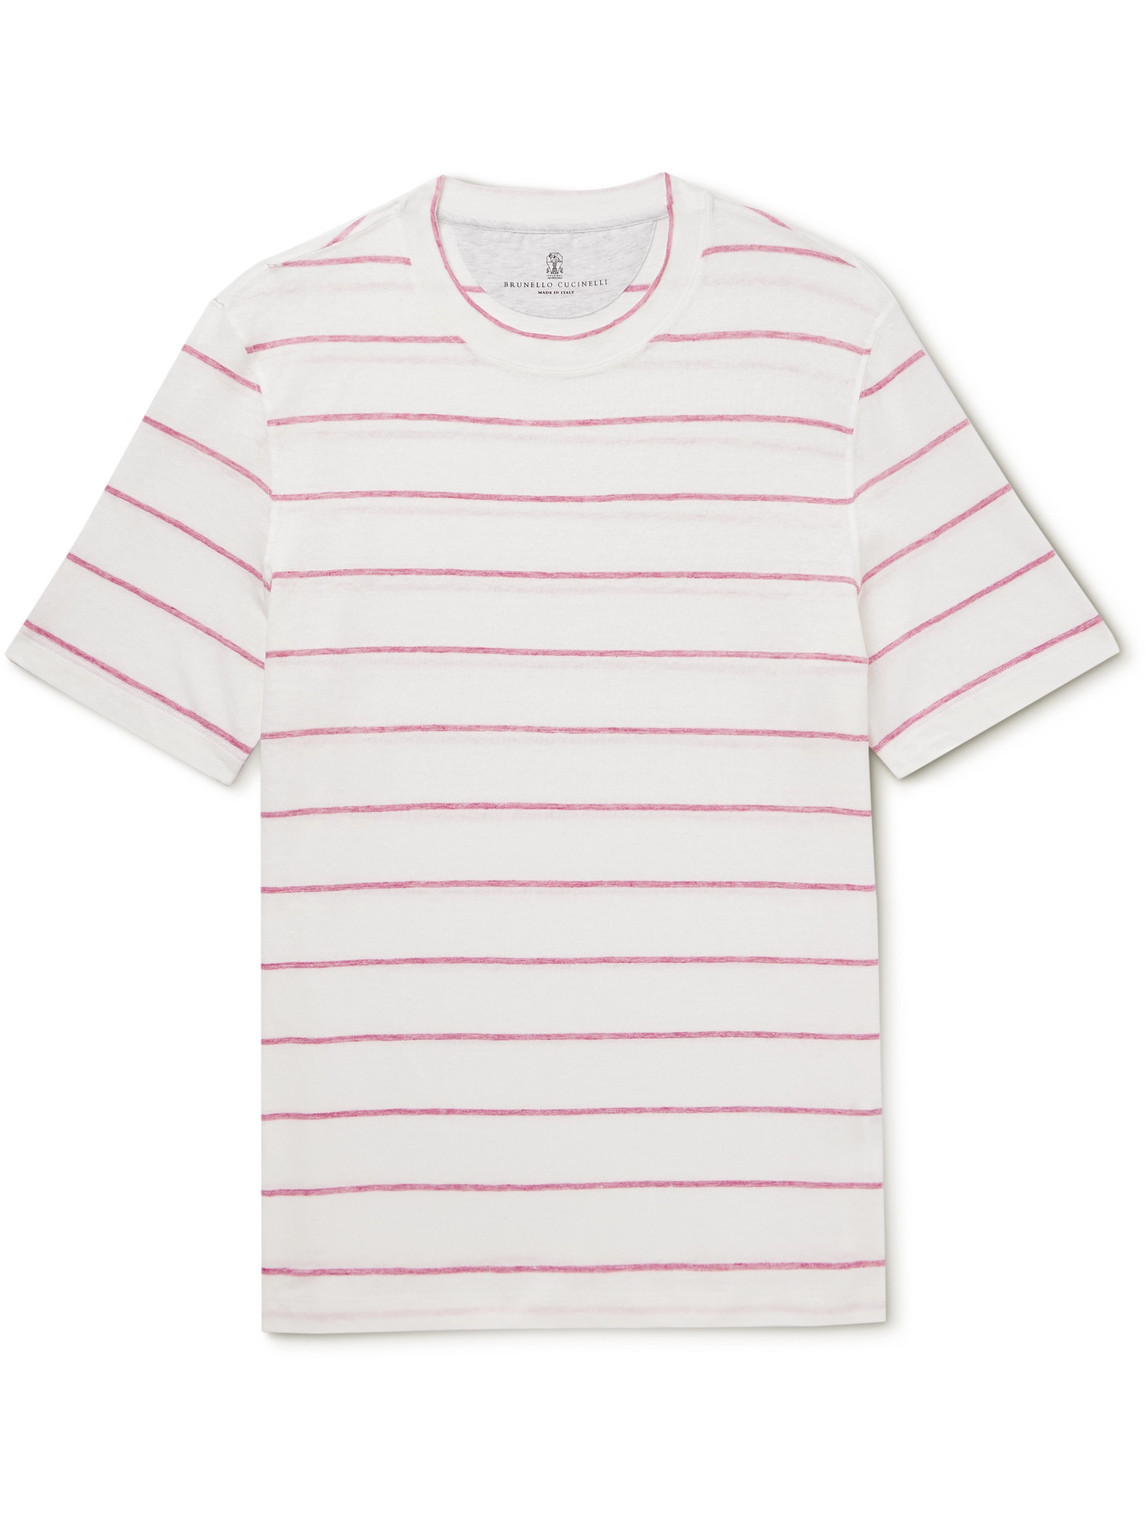 Brunello Cucinelli - Striped Linen and Cotton-Blend T-Shirt - Men - Pink - S von Brunello Cucinelli